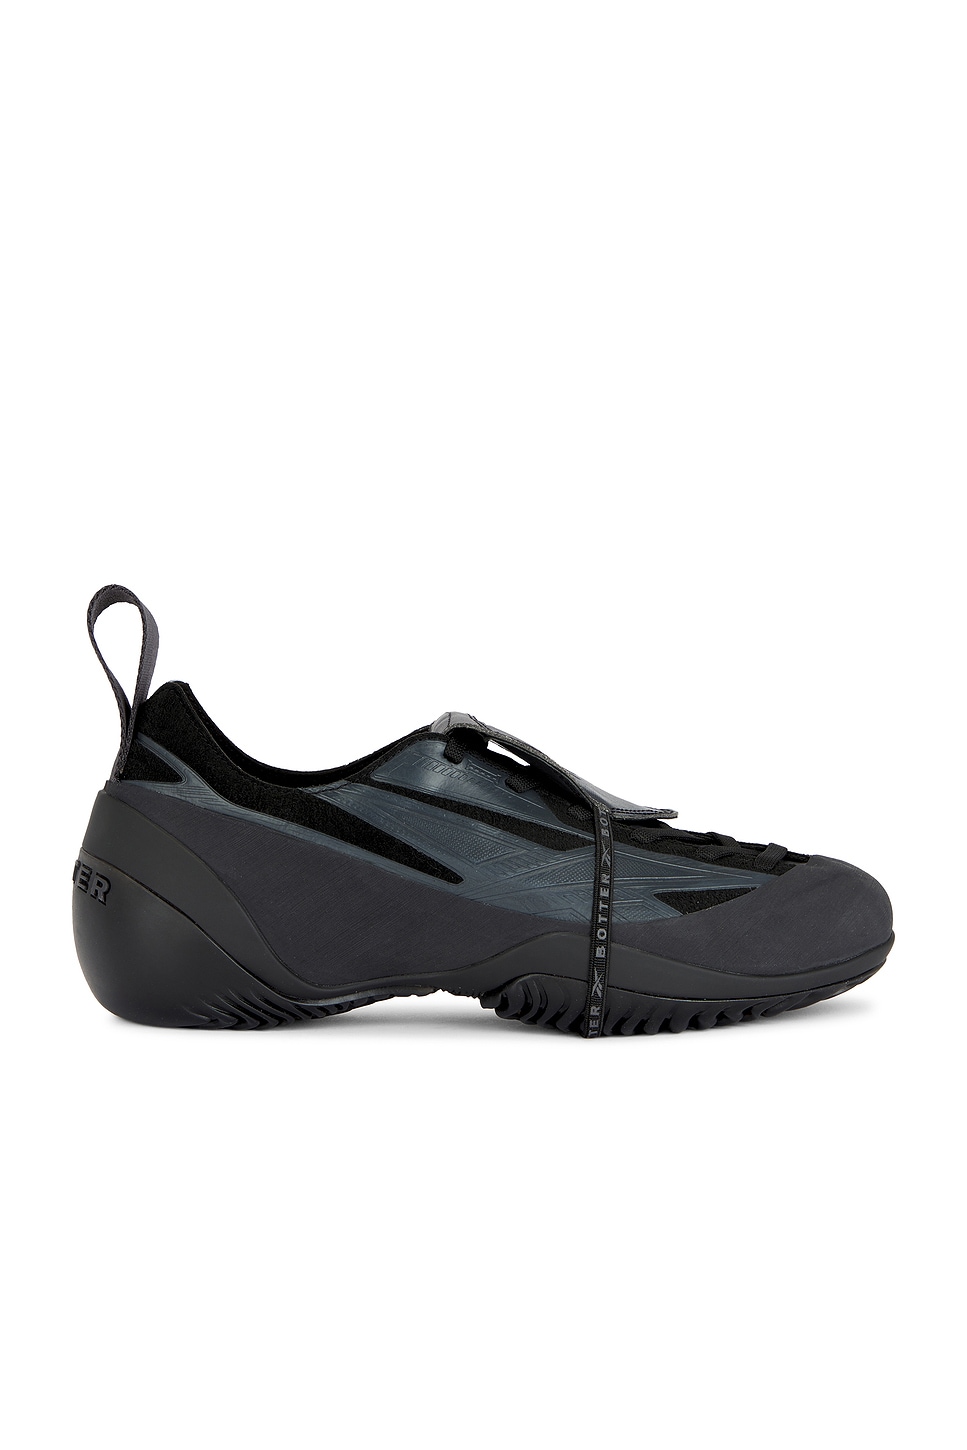 Image 1 of BOTTER x Reebok Sneakers in Black